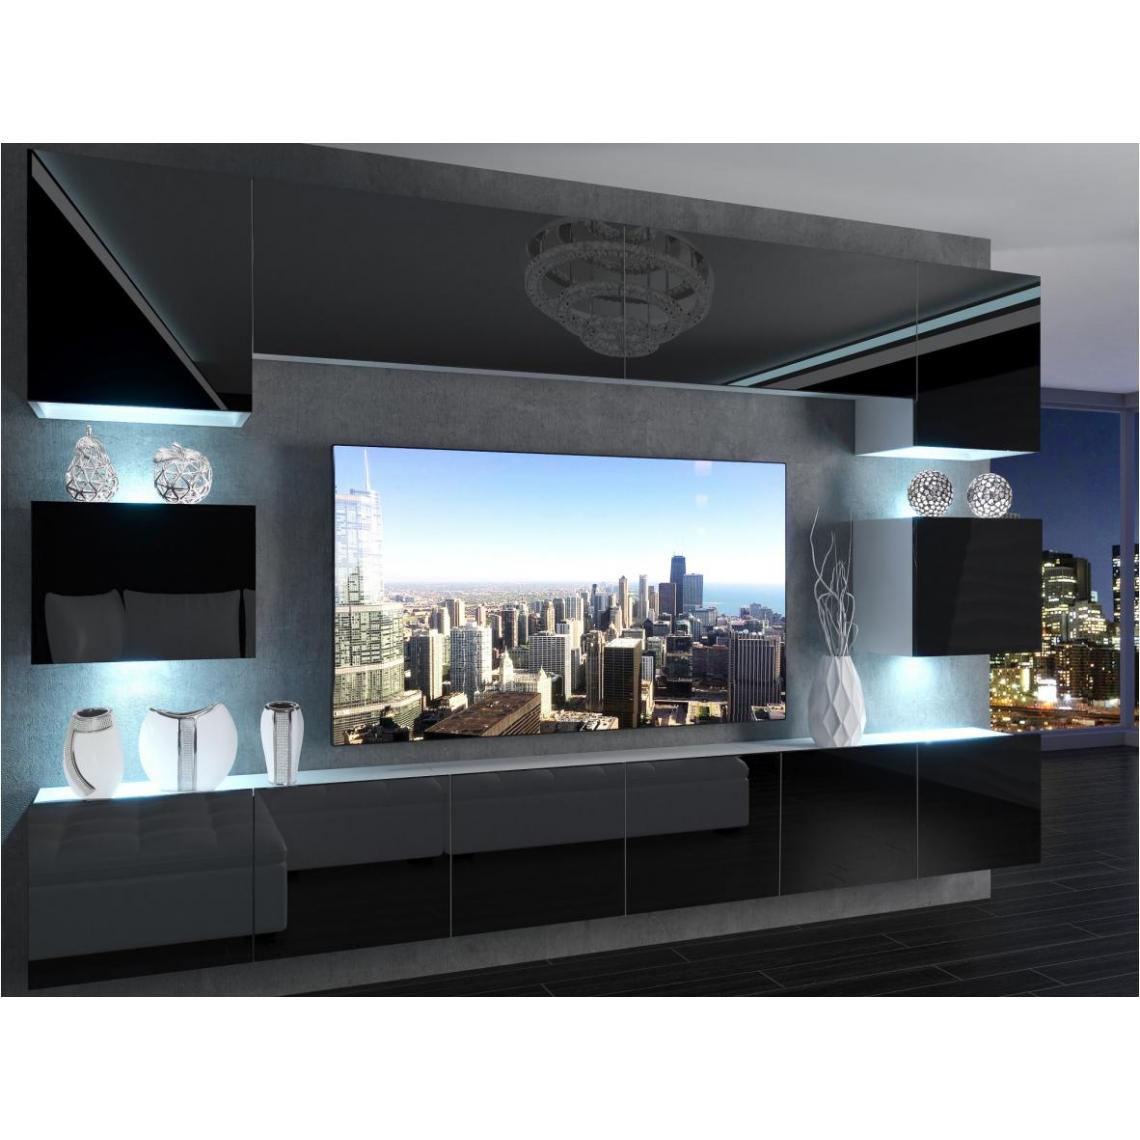 Hucoco - KLARI - Ensemble meubles TV + LED - Unité murale style moderne - Largeur 300 cm - Mur TV à suspendre finition gloss - Noir - Meubles TV, Hi-Fi